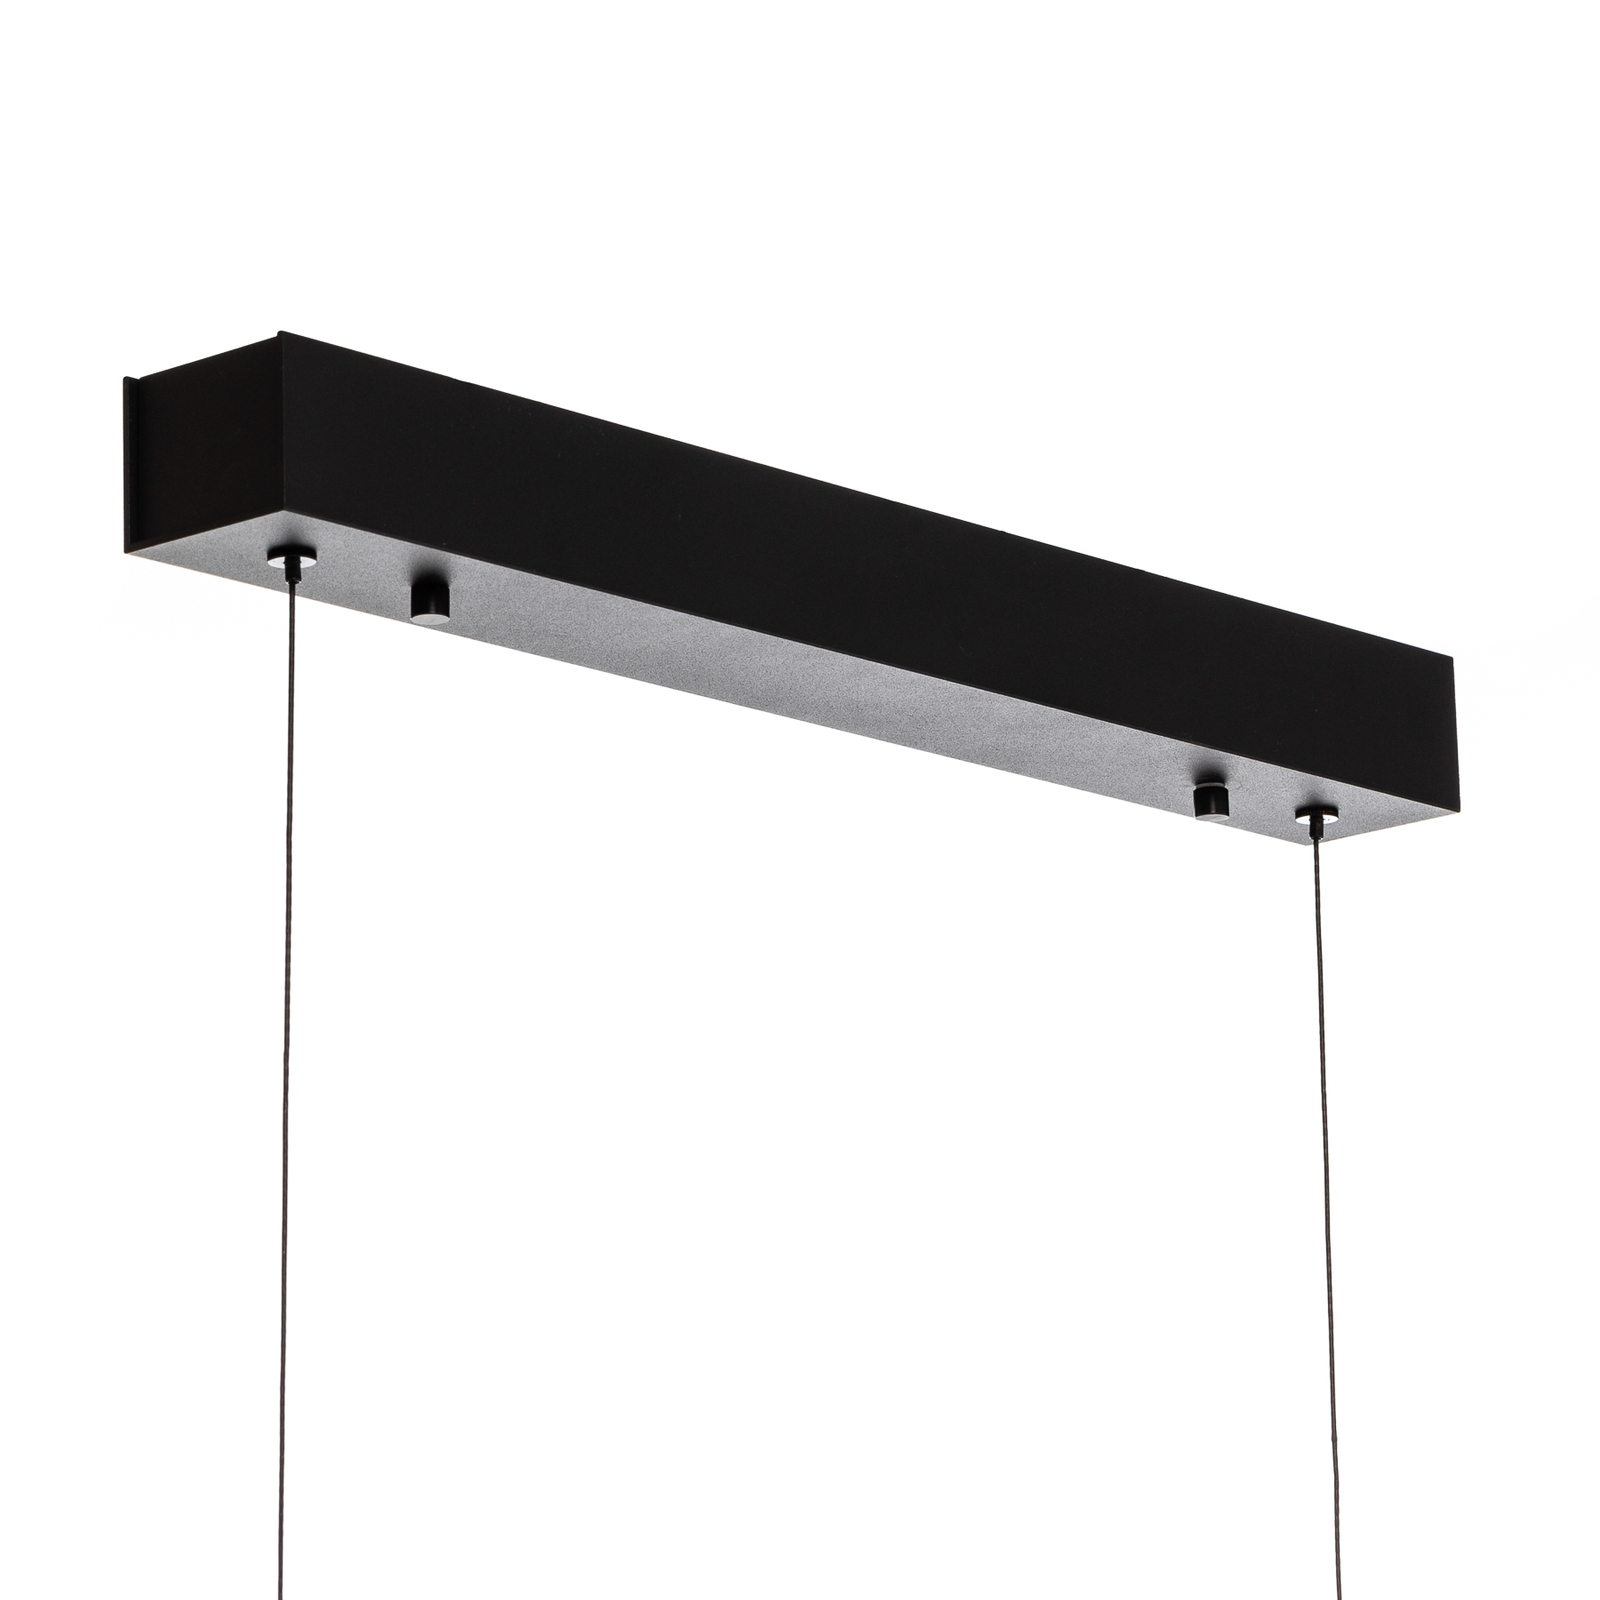 Quitani Lampa wisząca LED Kiera, dąb/czarny, 98 cm